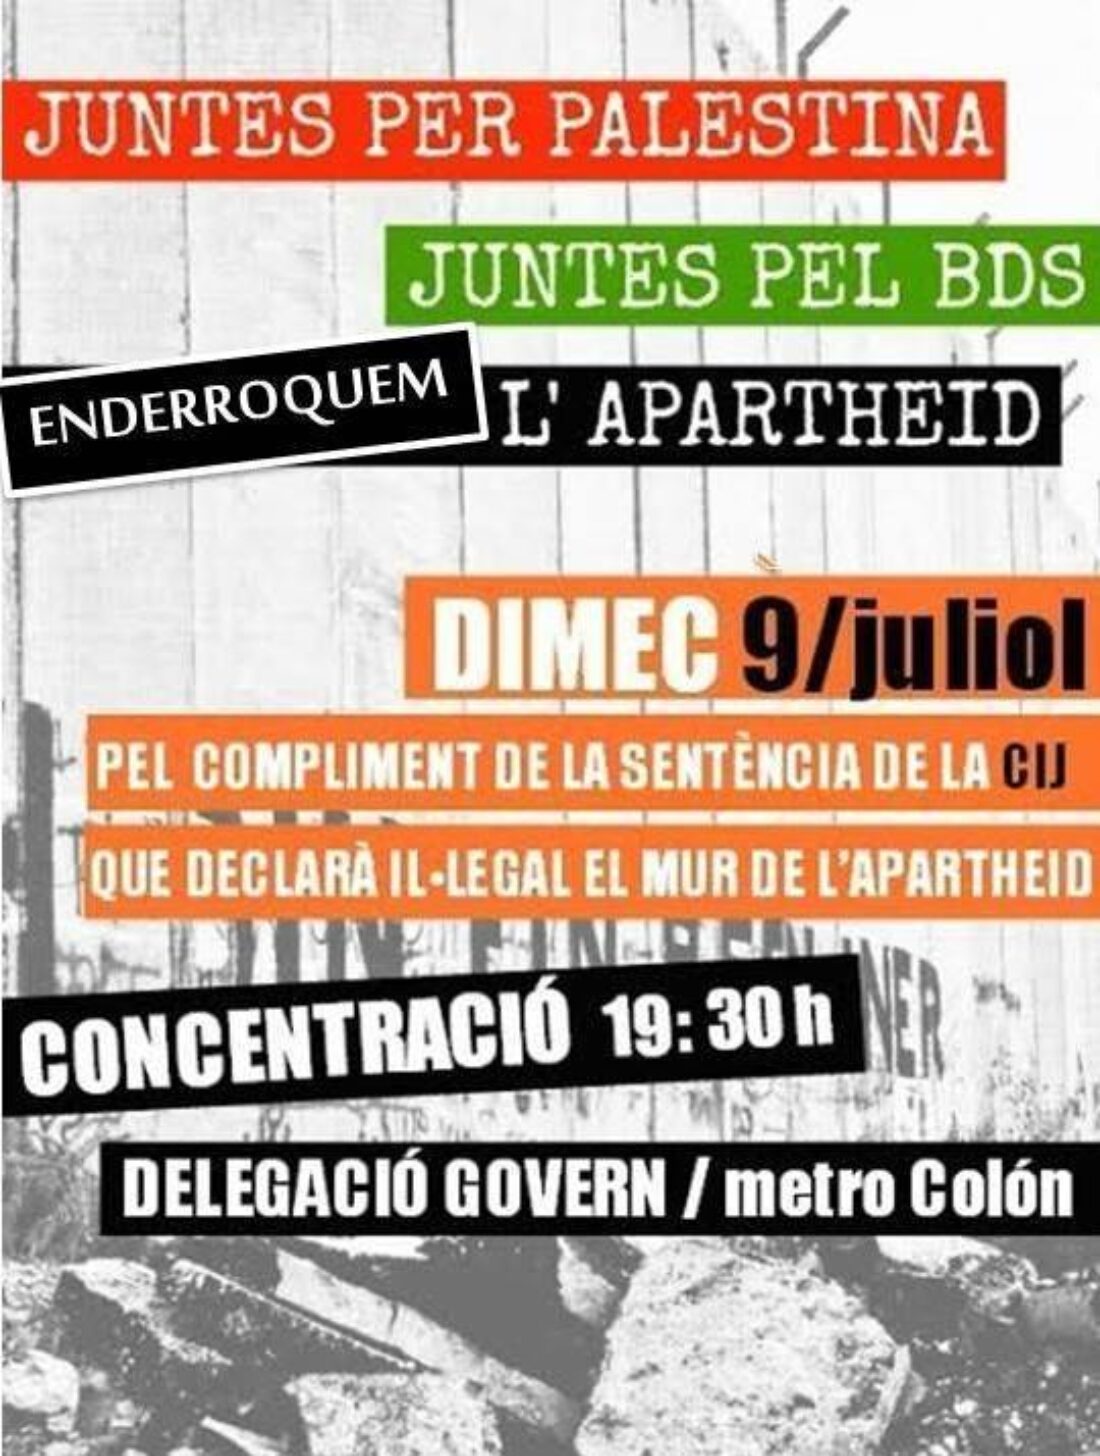 9-J Valencia: Concentración Juntas por Palestina, juntas por el BDS. Derribemos el apartheid